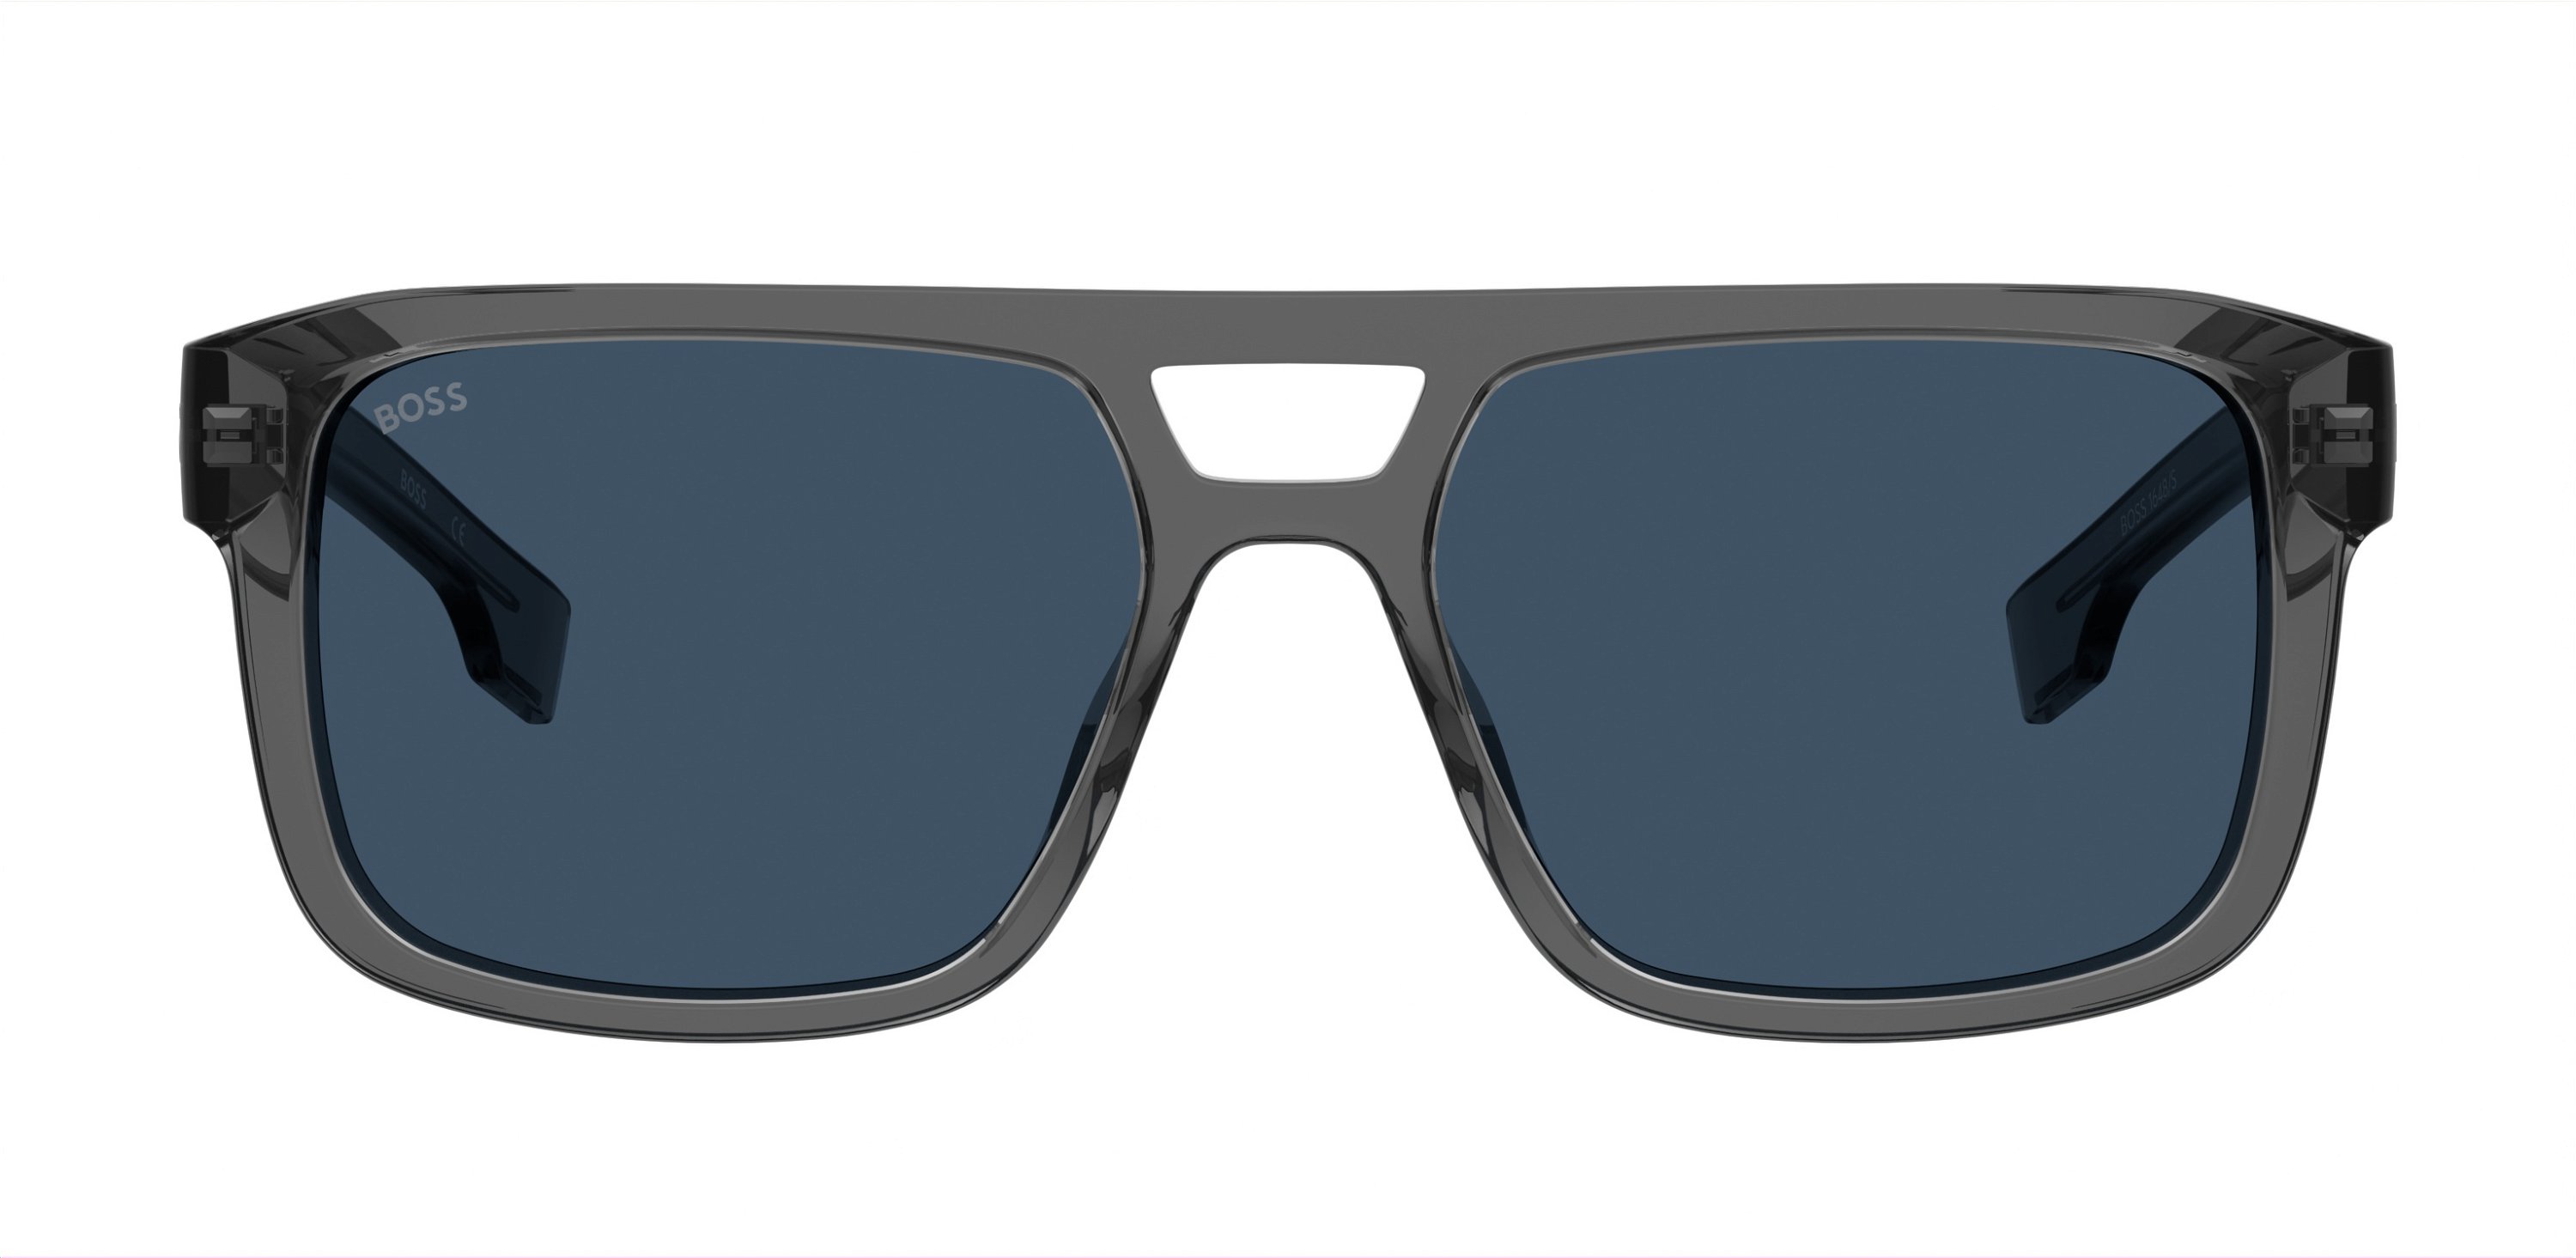 Das Bild zeigt die Sonnenbrille BOSS1648S KB7 von der Marke BOSS in Grau.